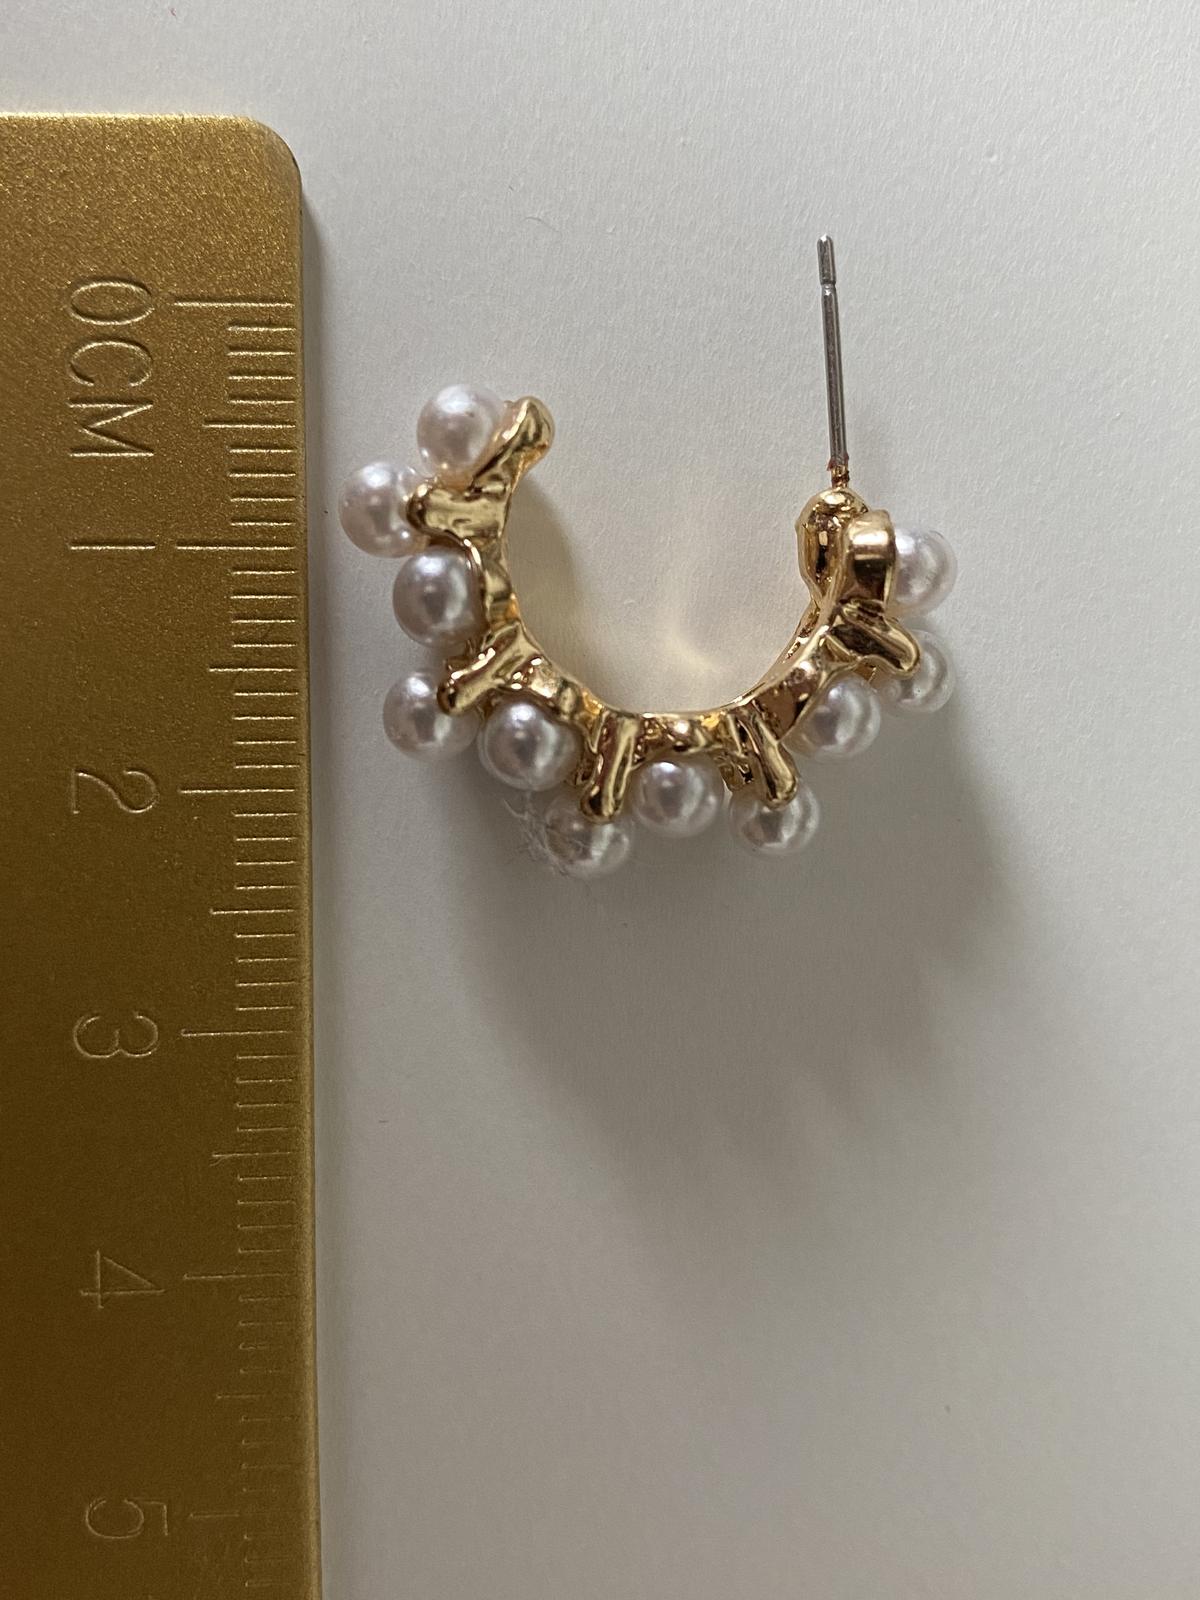 Náušnice s perličkami – bižuterie - Obrázek č. 2